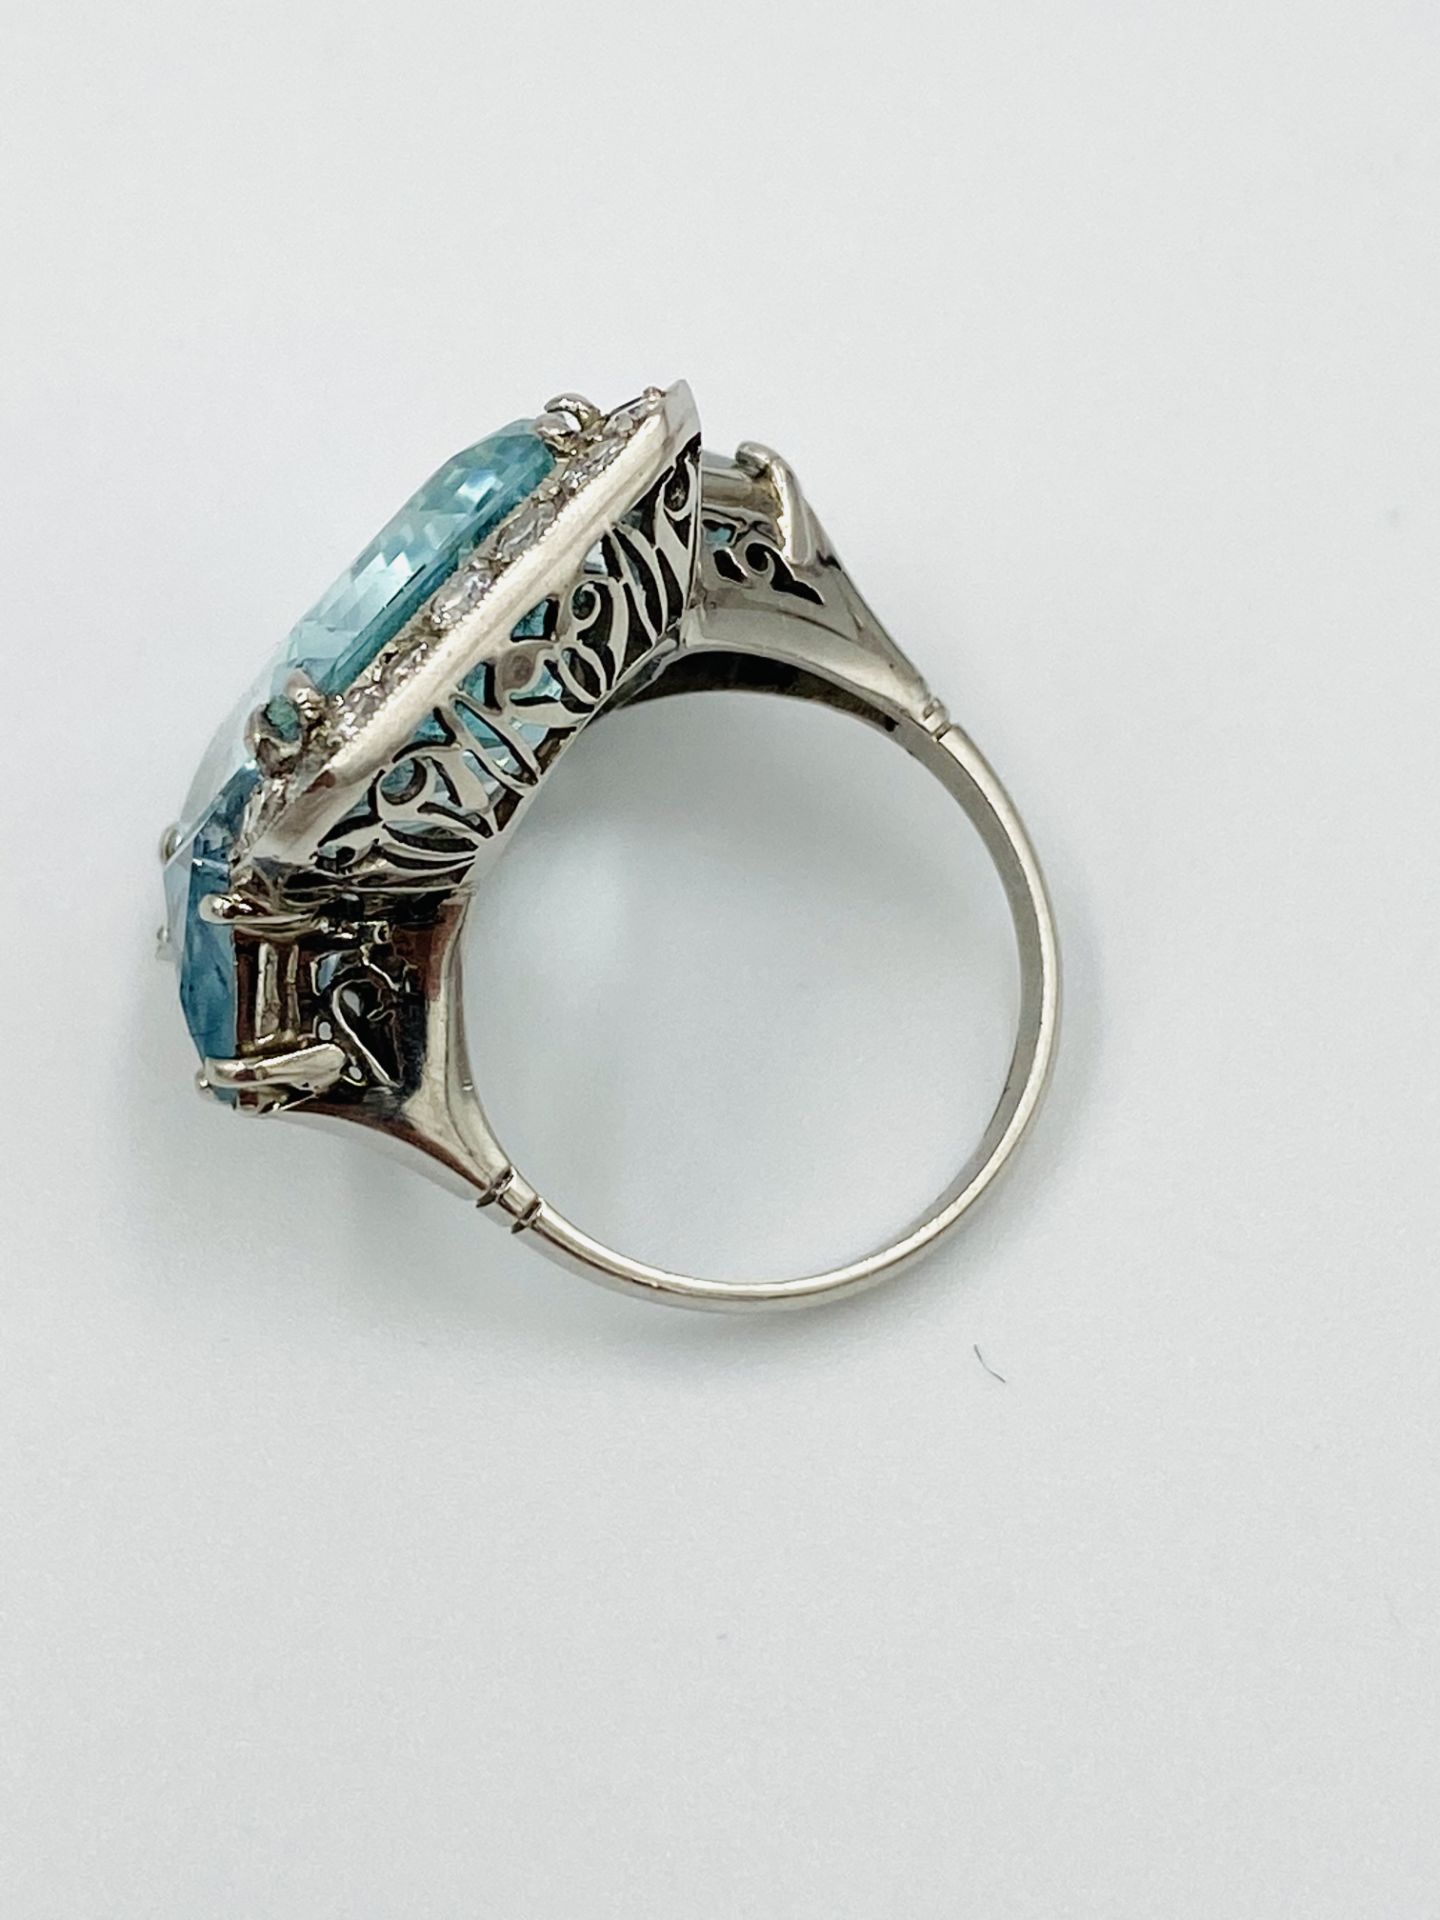 Platinum, aquamarine and diamond ring - Image 4 of 6